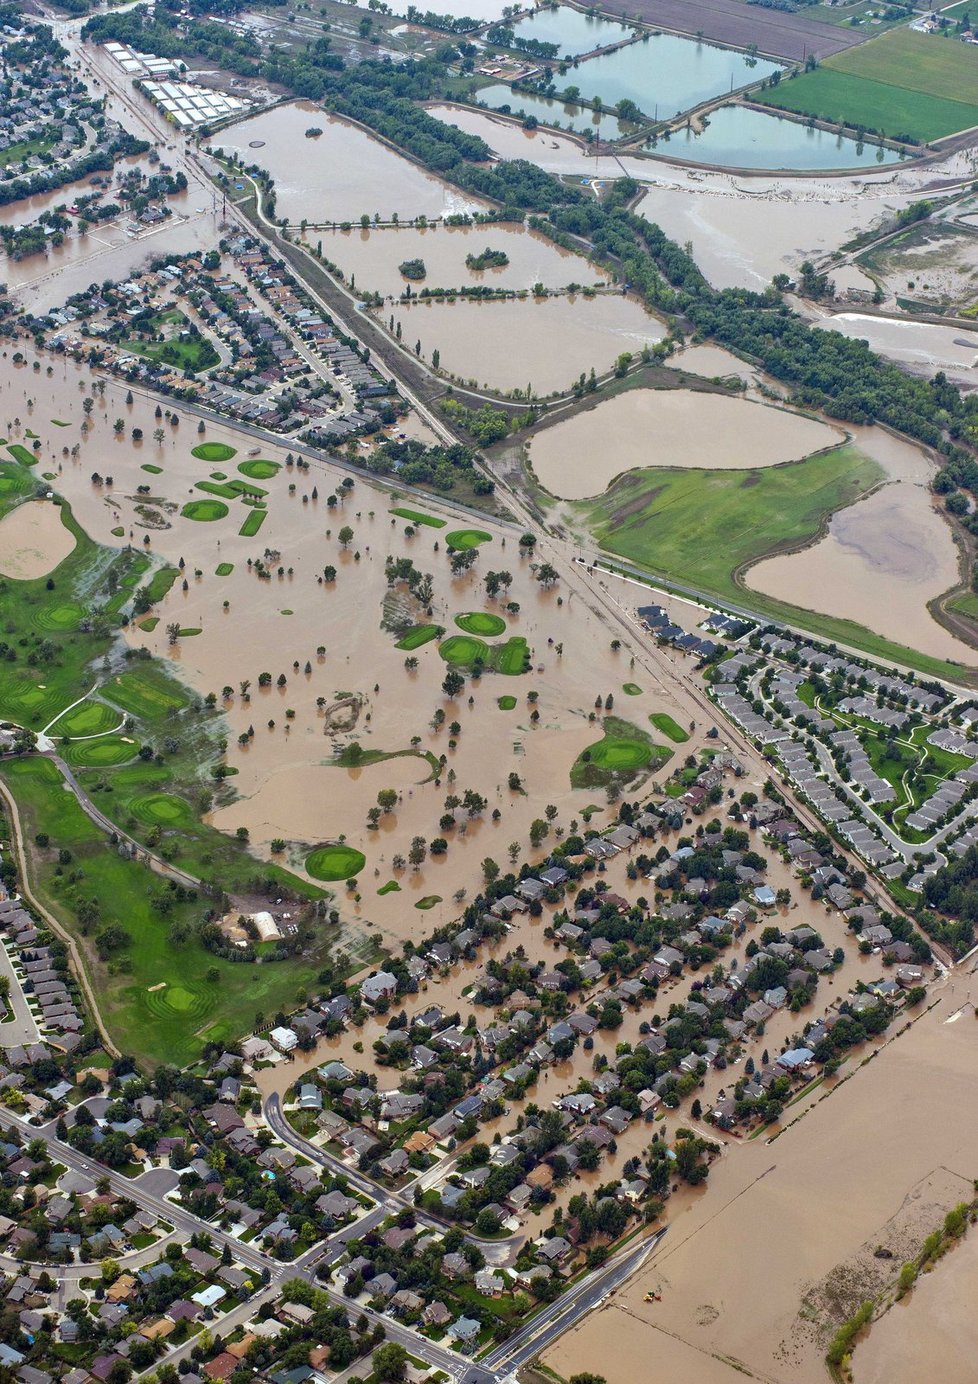 V americkém státě Colorado, který už několik dnů sužují záplavy, se pohřešuje přes 500 lidí.